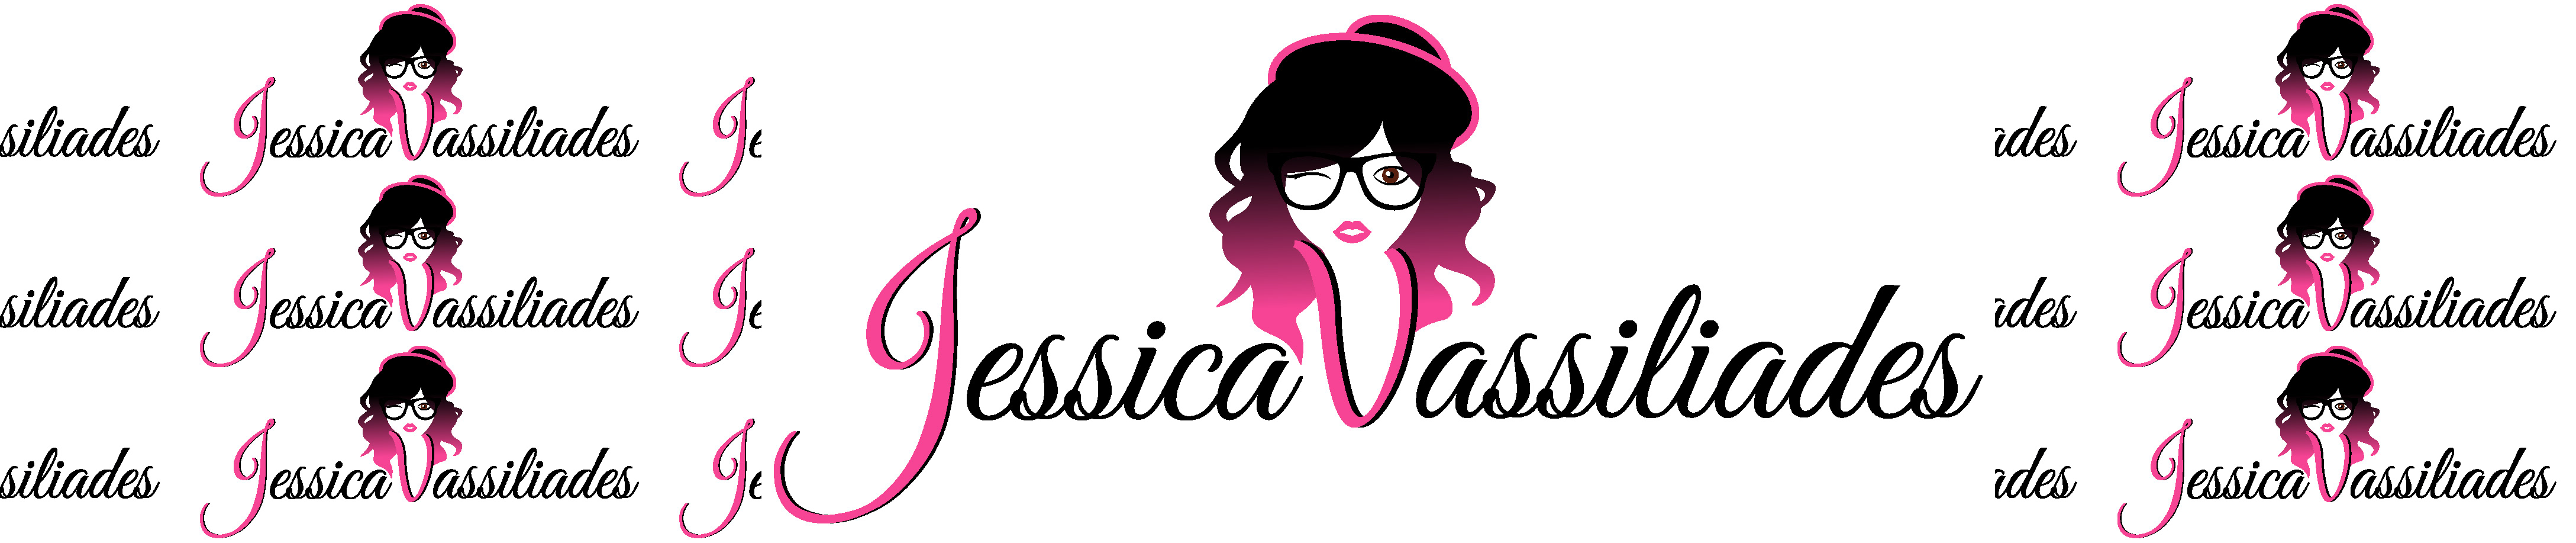 Jessica Vassiliades's profile banner